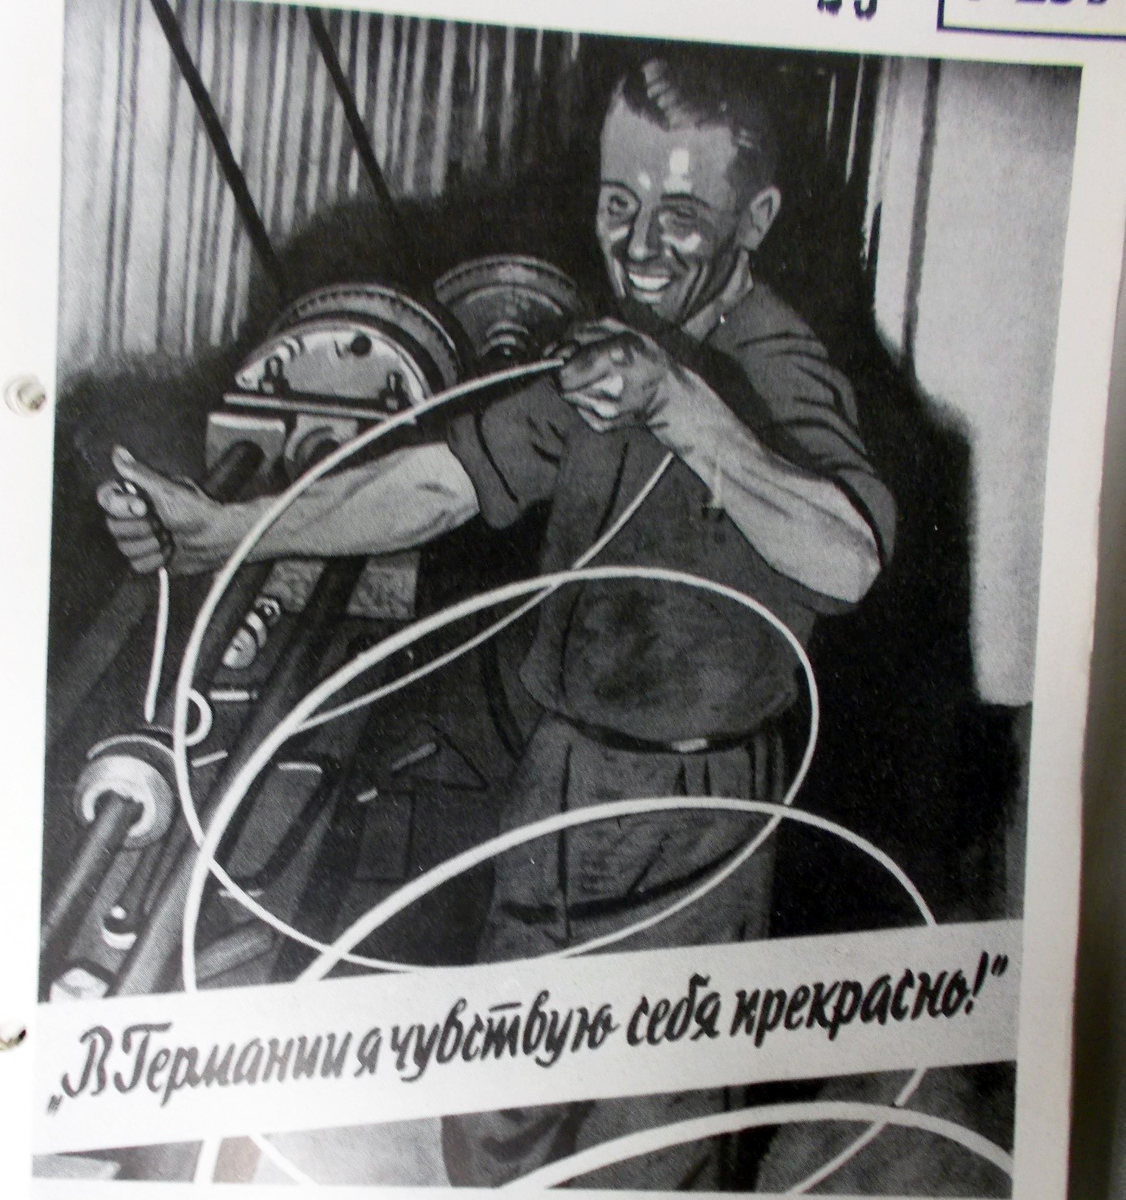 Gezeichnetes Plakat von einem lachenden Mann an einer Maschine